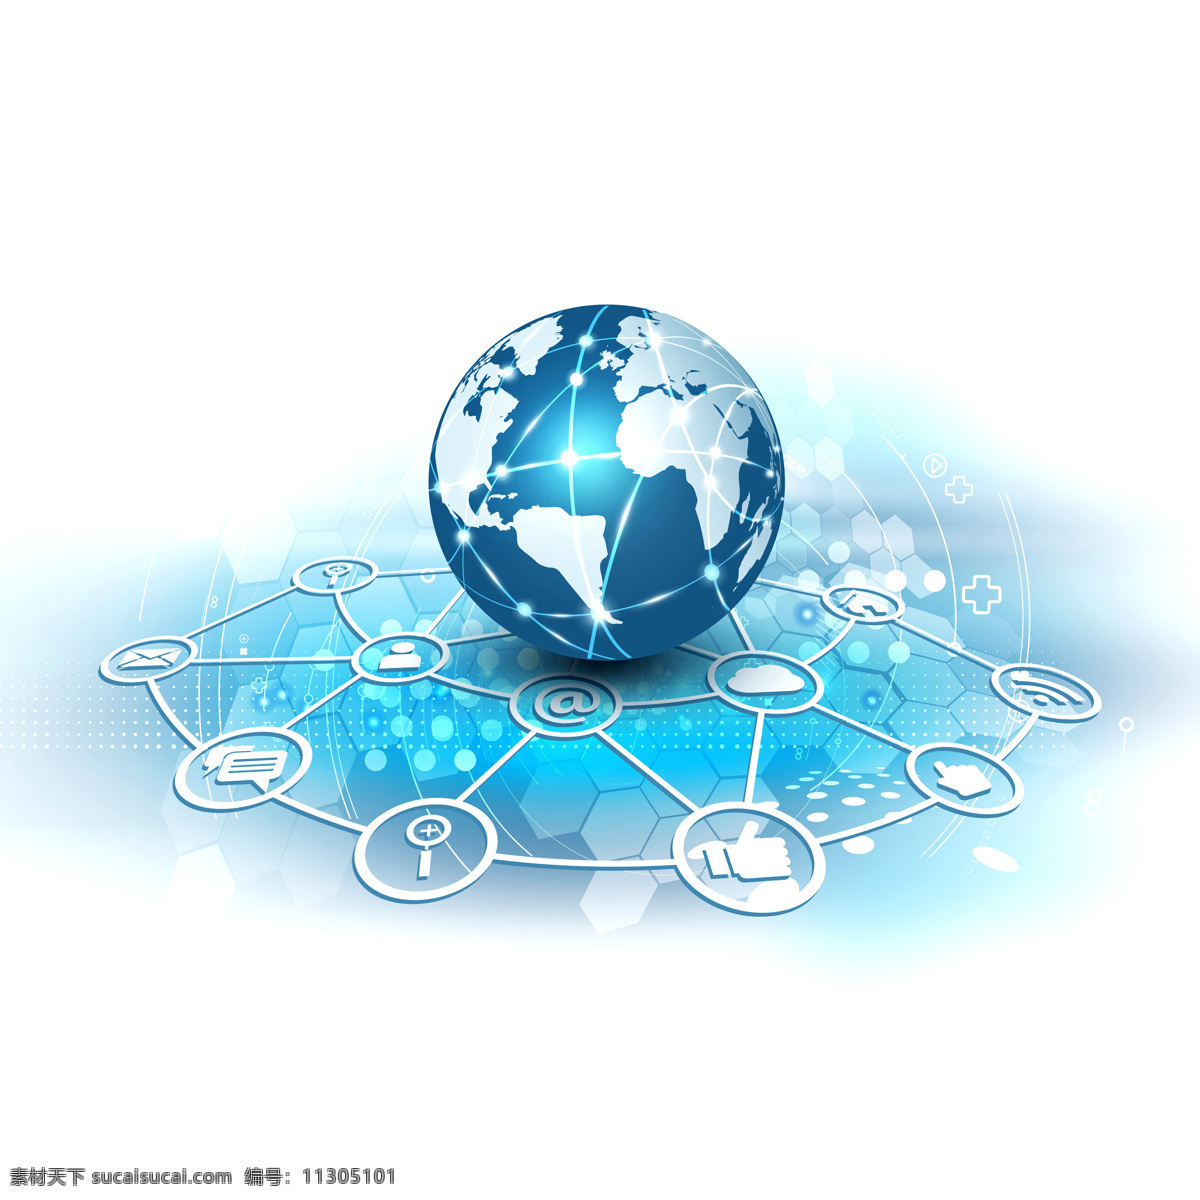 互联网 地球 商务 图标 计算机网络 高科技互联网 数码科技 数码电器 通讯网络 金融商务 通讯设备 现代科技